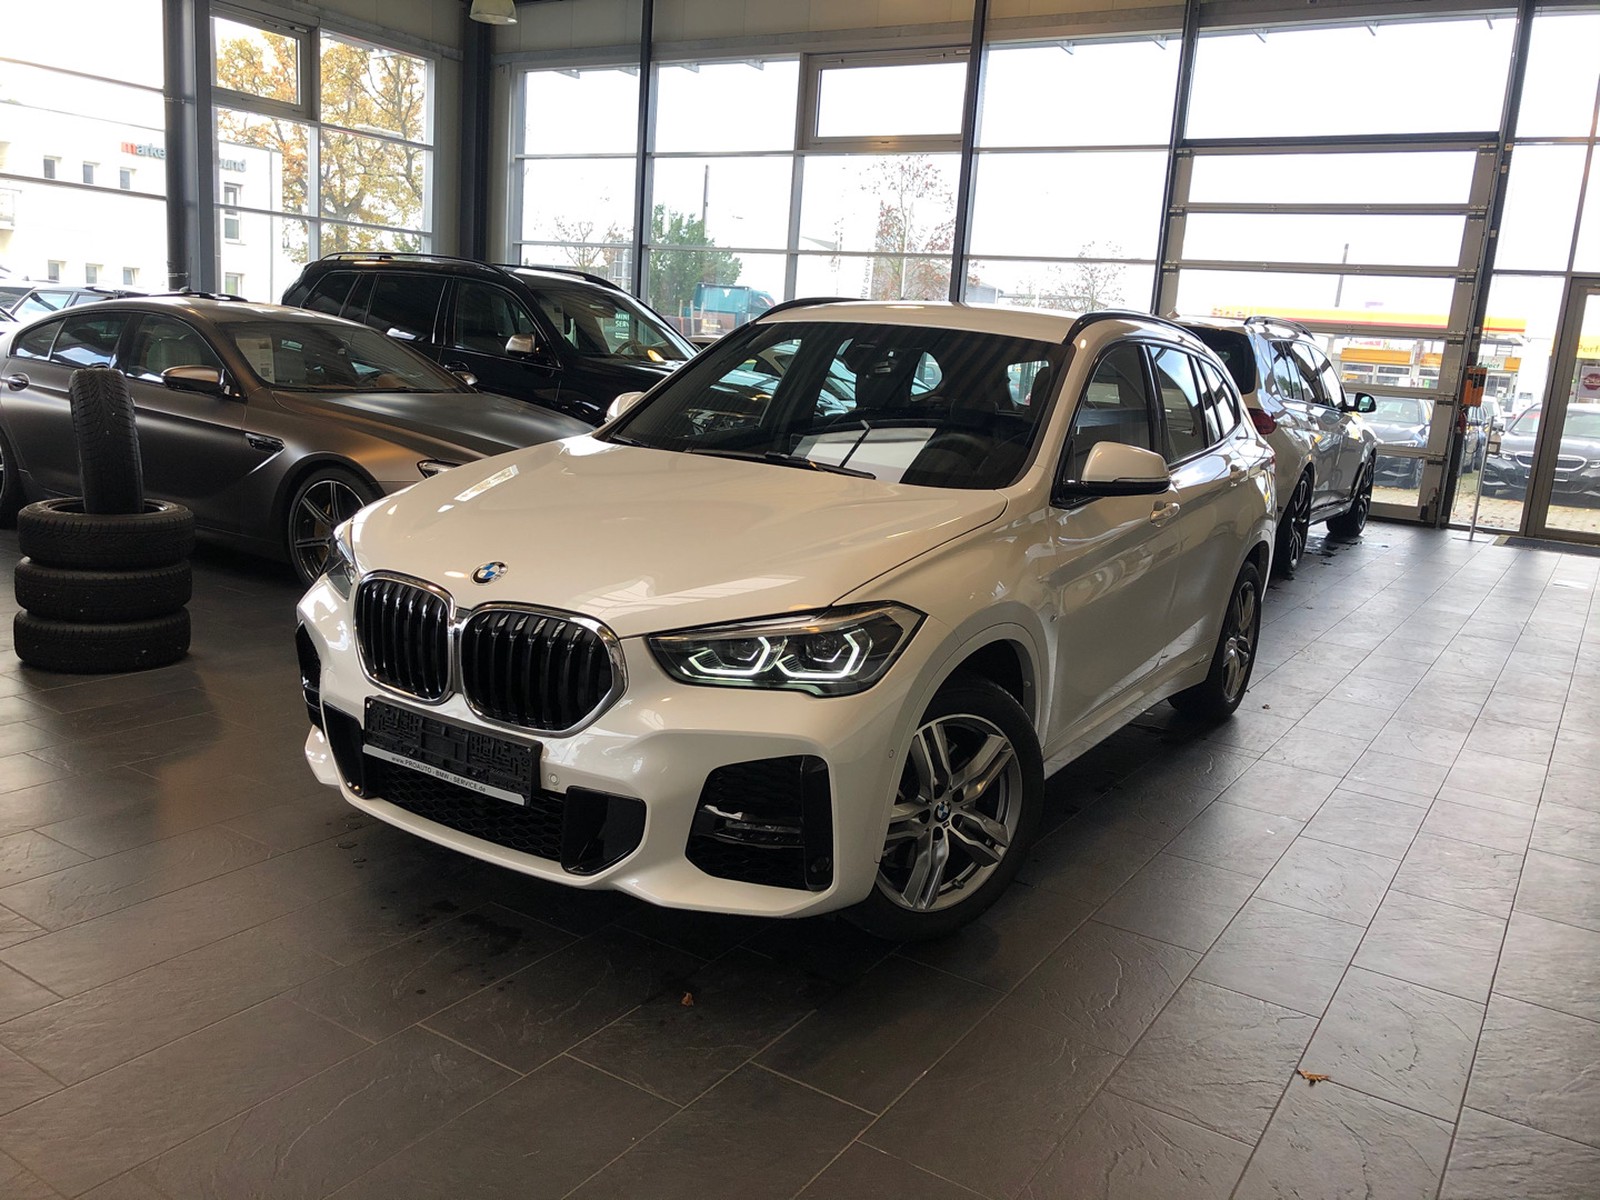 BMW X1 Jahreswagen in Langenfeld. Preis 38990 eur | BMW ...